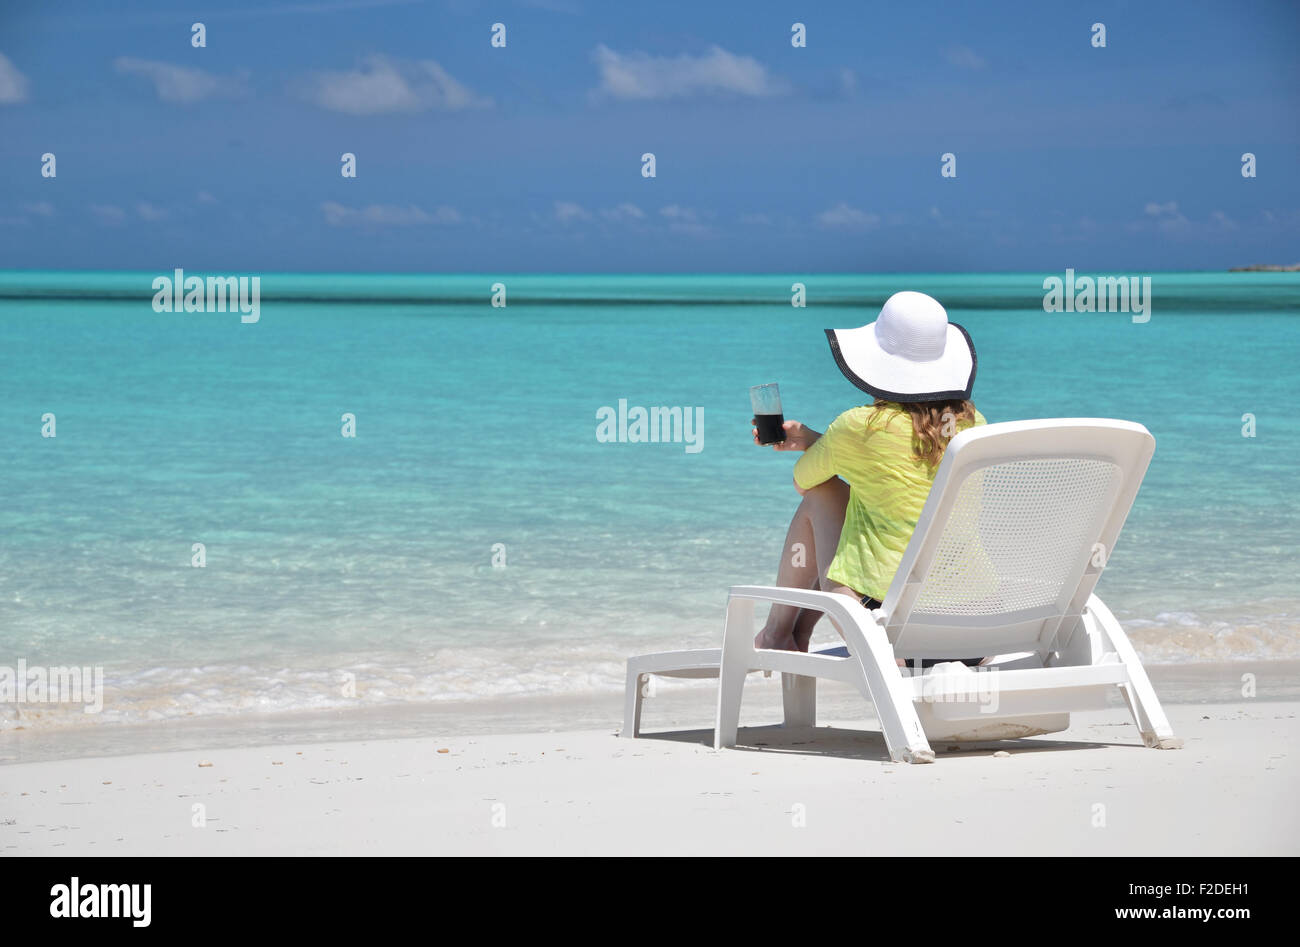 Girl on the beach of Exuma, Bahamas Stock Photo